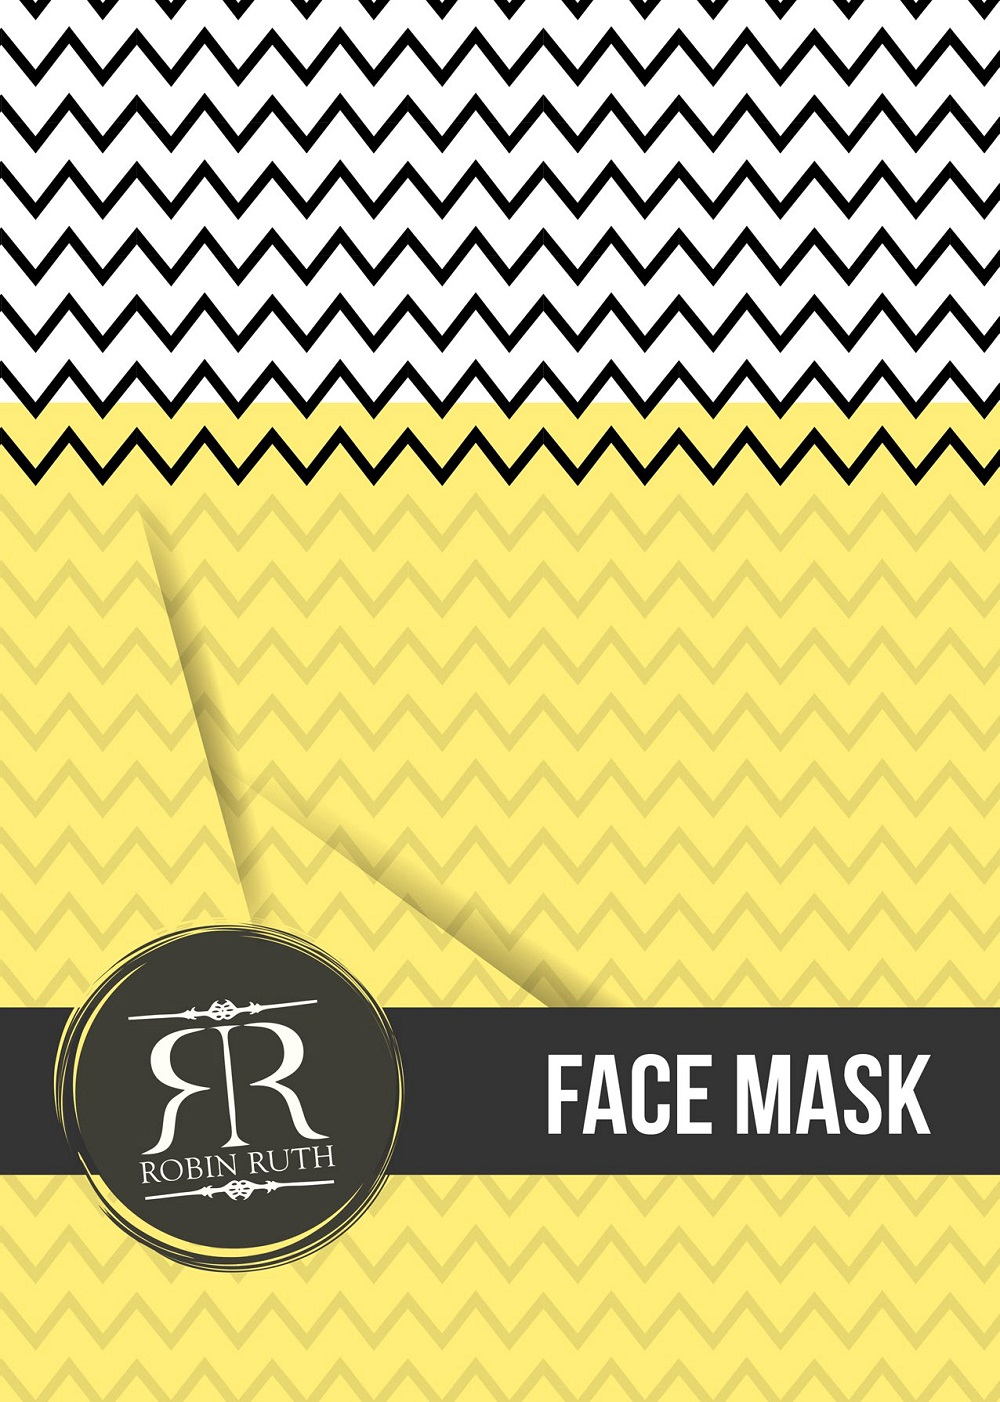 robin ruth face mask logo